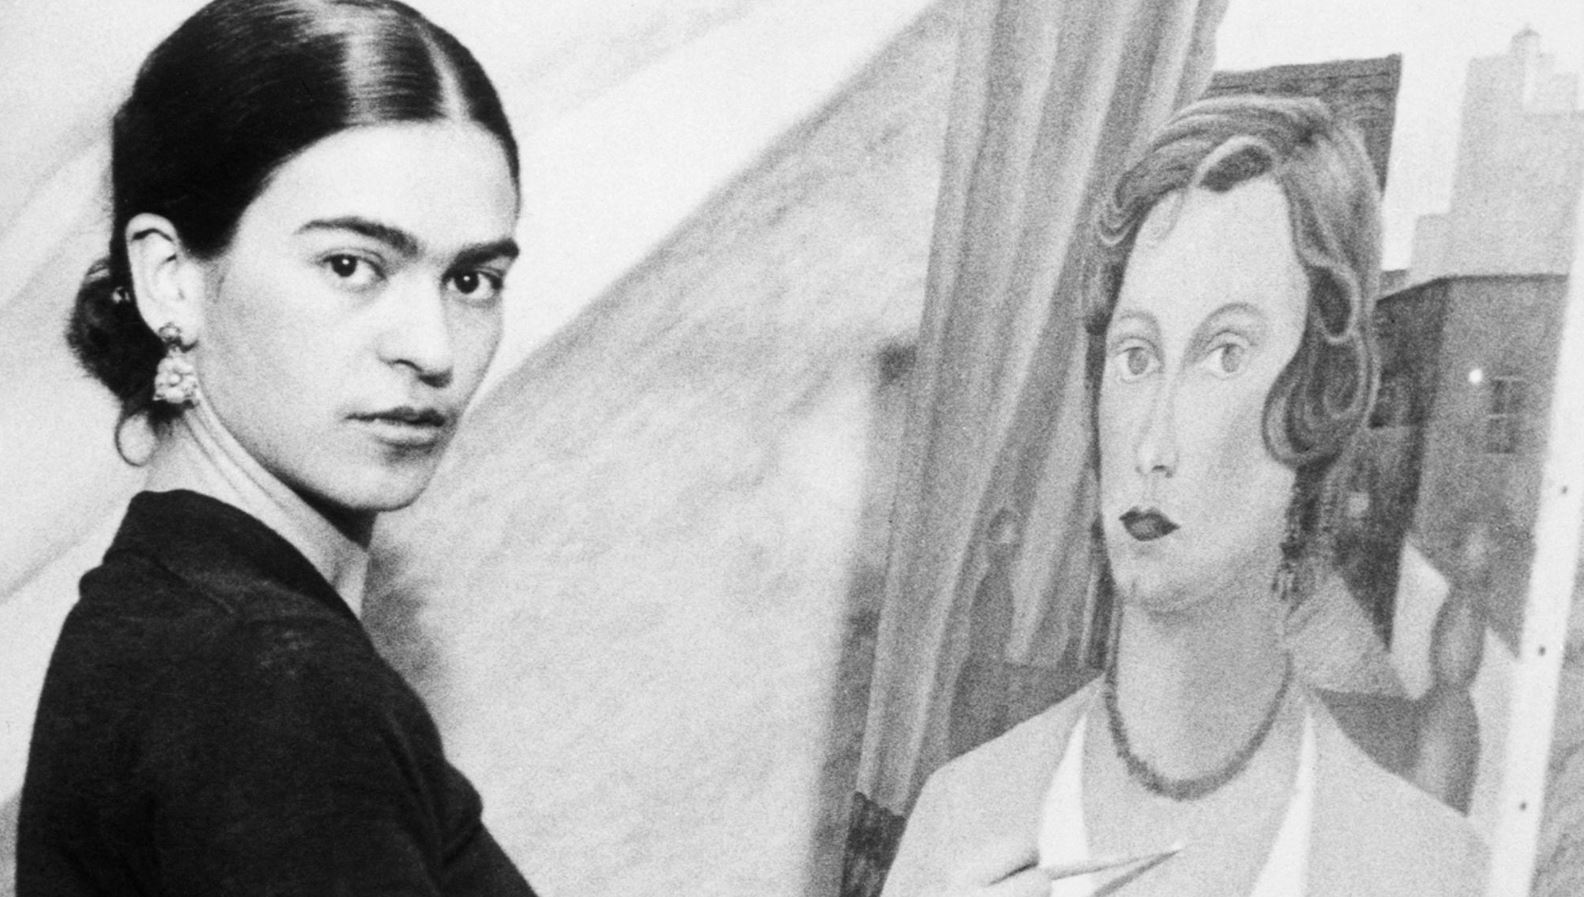 Londres presenta exhibición sobre Frida Kahlo